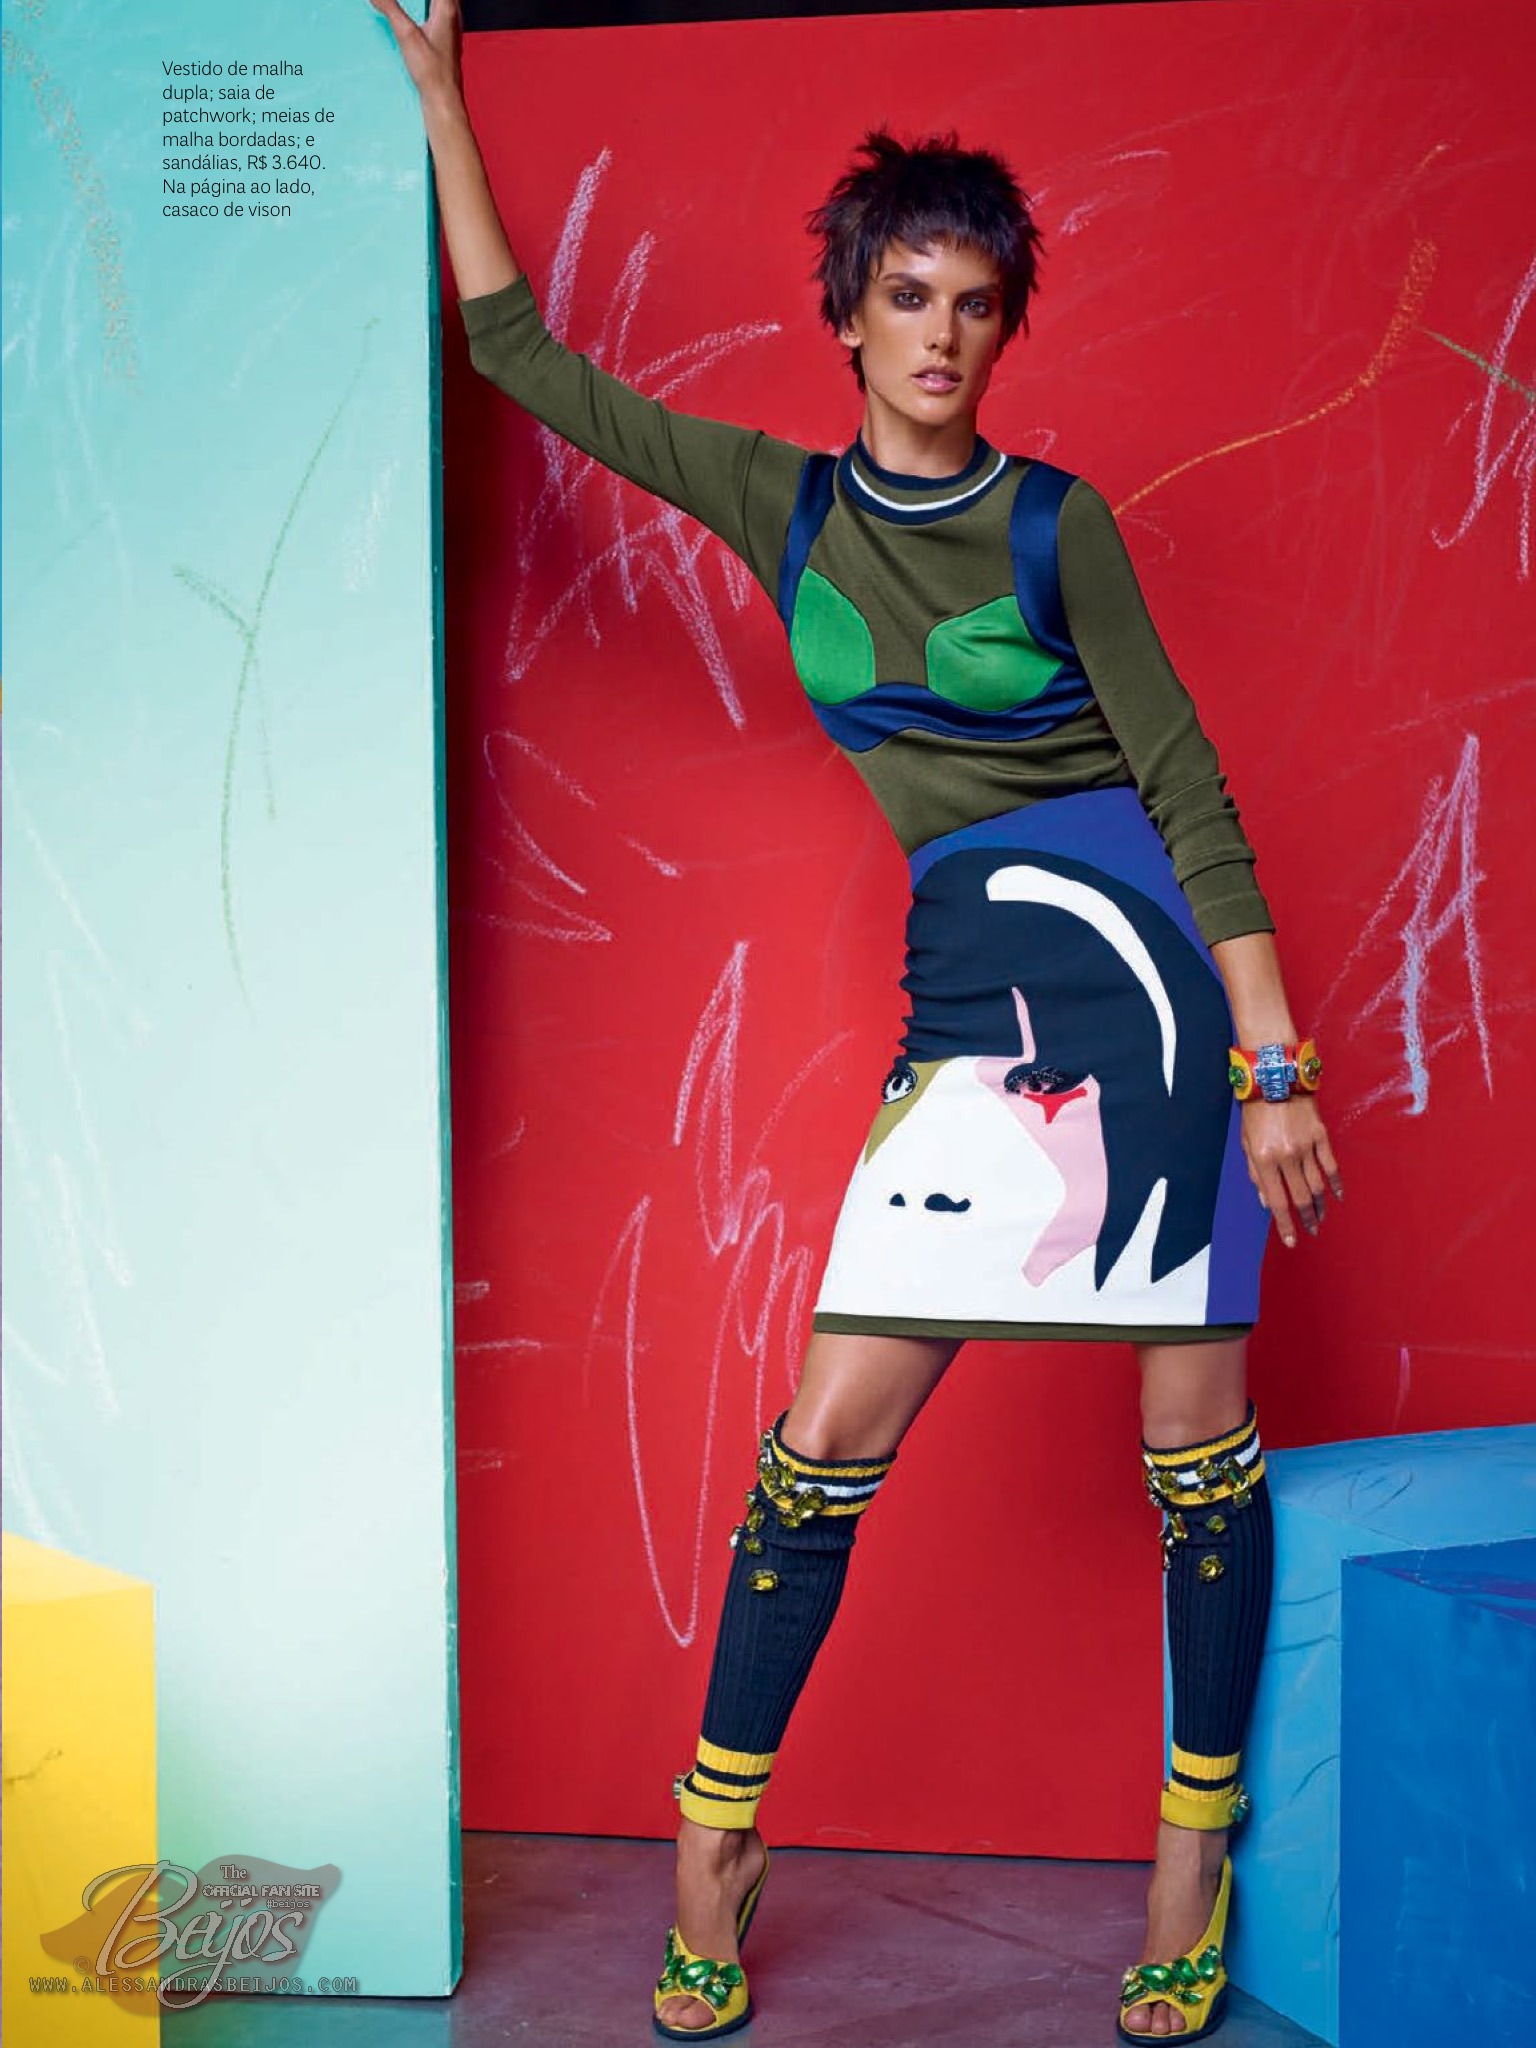 صور اليساندرا أمبروسيو على مجلة Vogue البرازيل مارس 2014